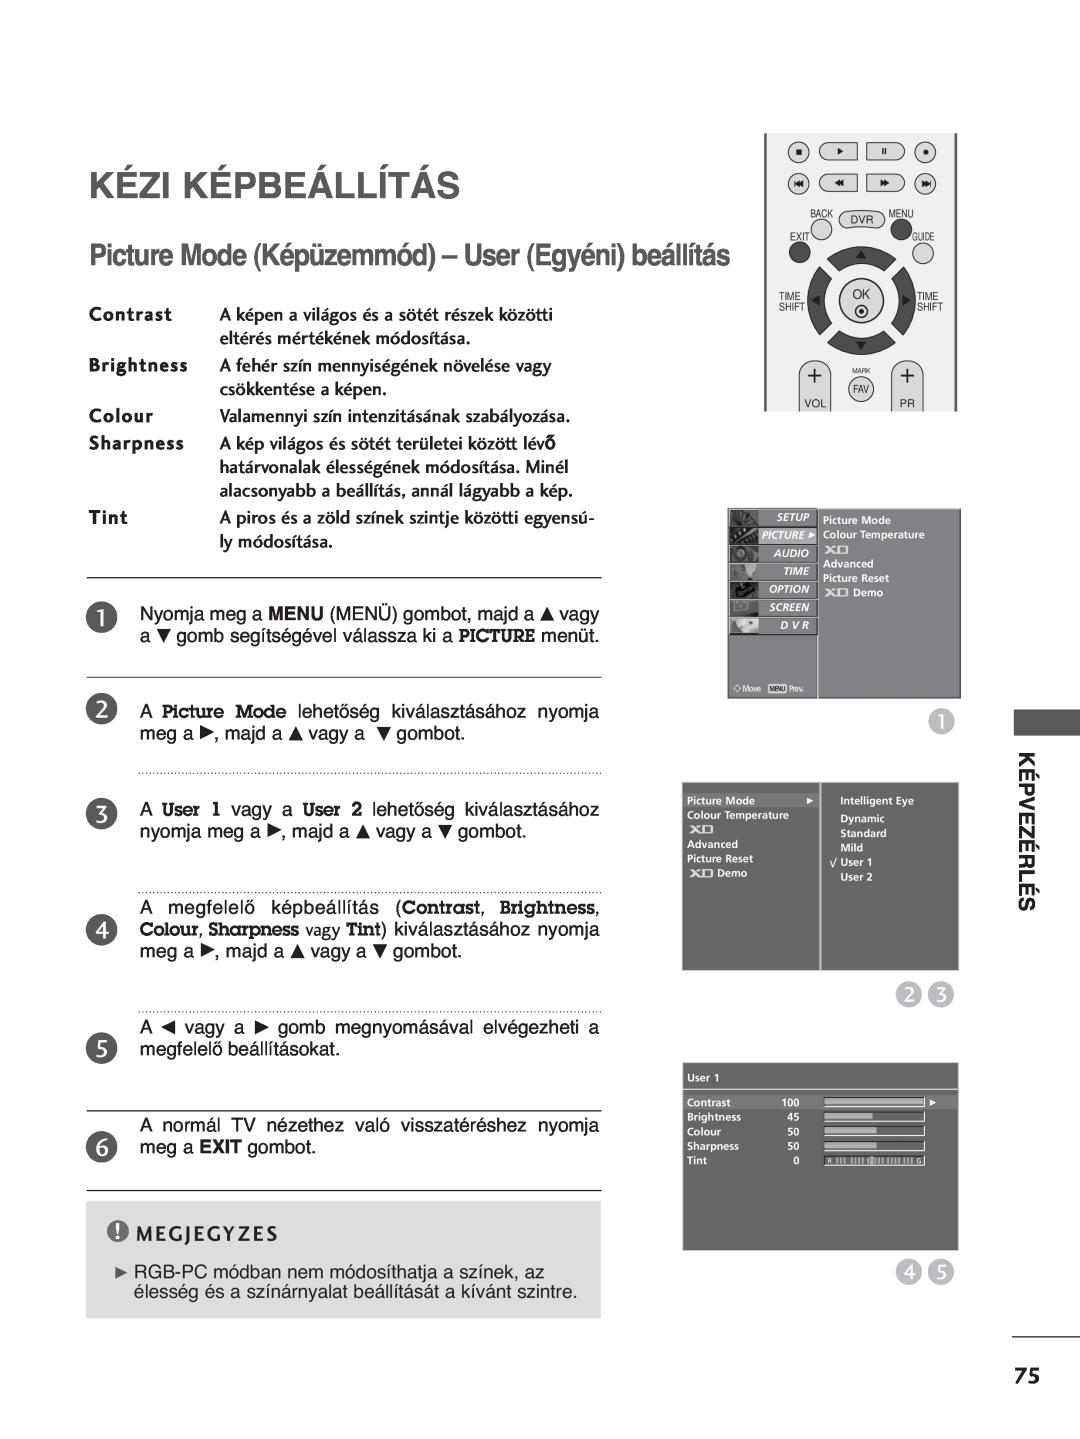 LG Electronics 5500PPTT88 manual Kézi Képbeállítás, Picture Mode Képüzemmód - User Egyéni beállítás, M E G J E Gy Z E S 